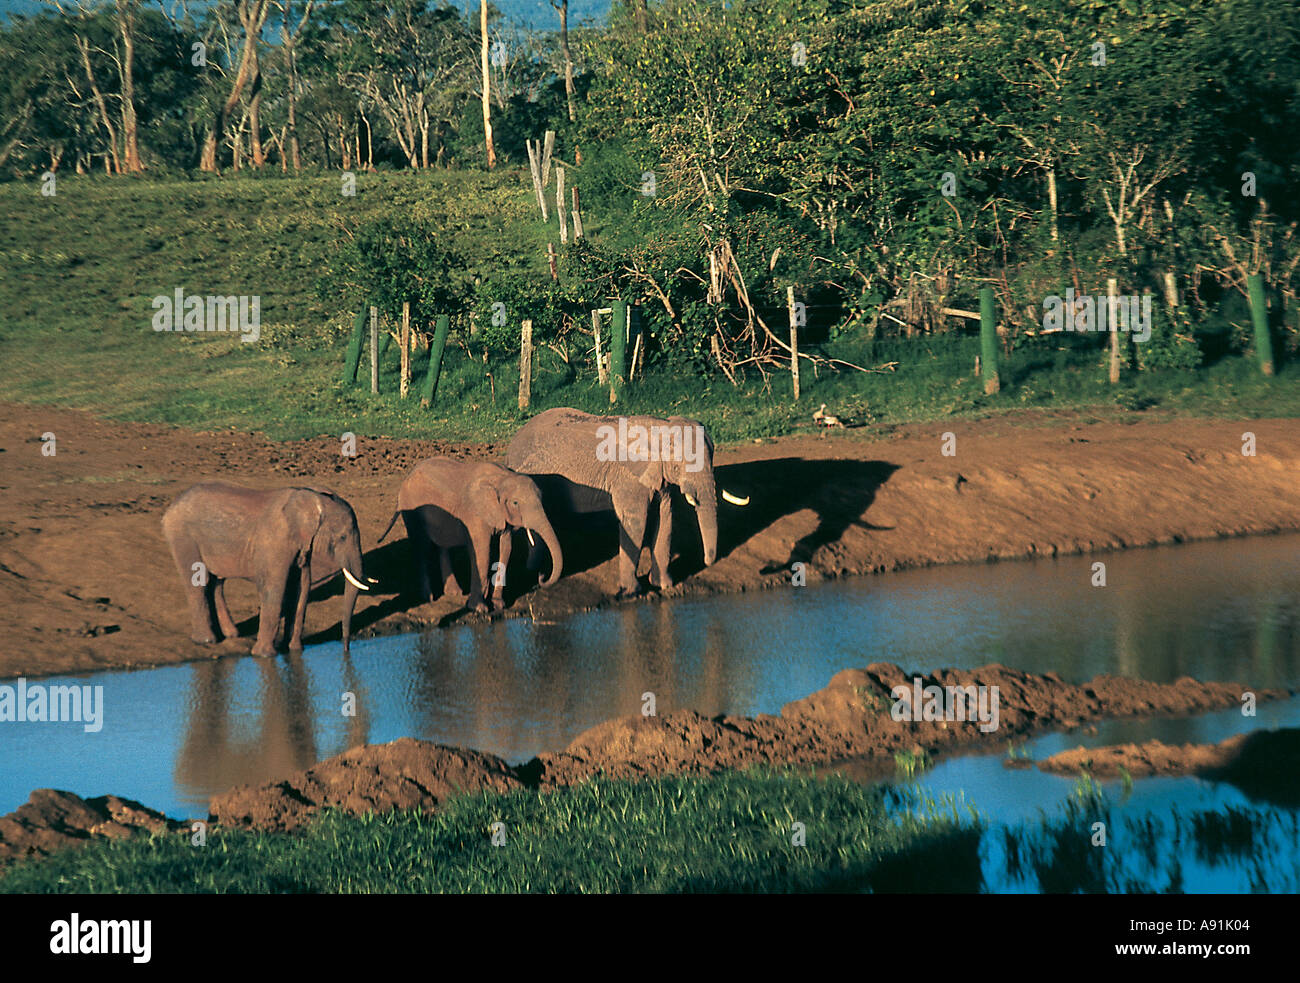 NMJ99640 trois éléphants sauvages du parc national de l'eau potable au Kenya Afrique Kenya Banque D'Images